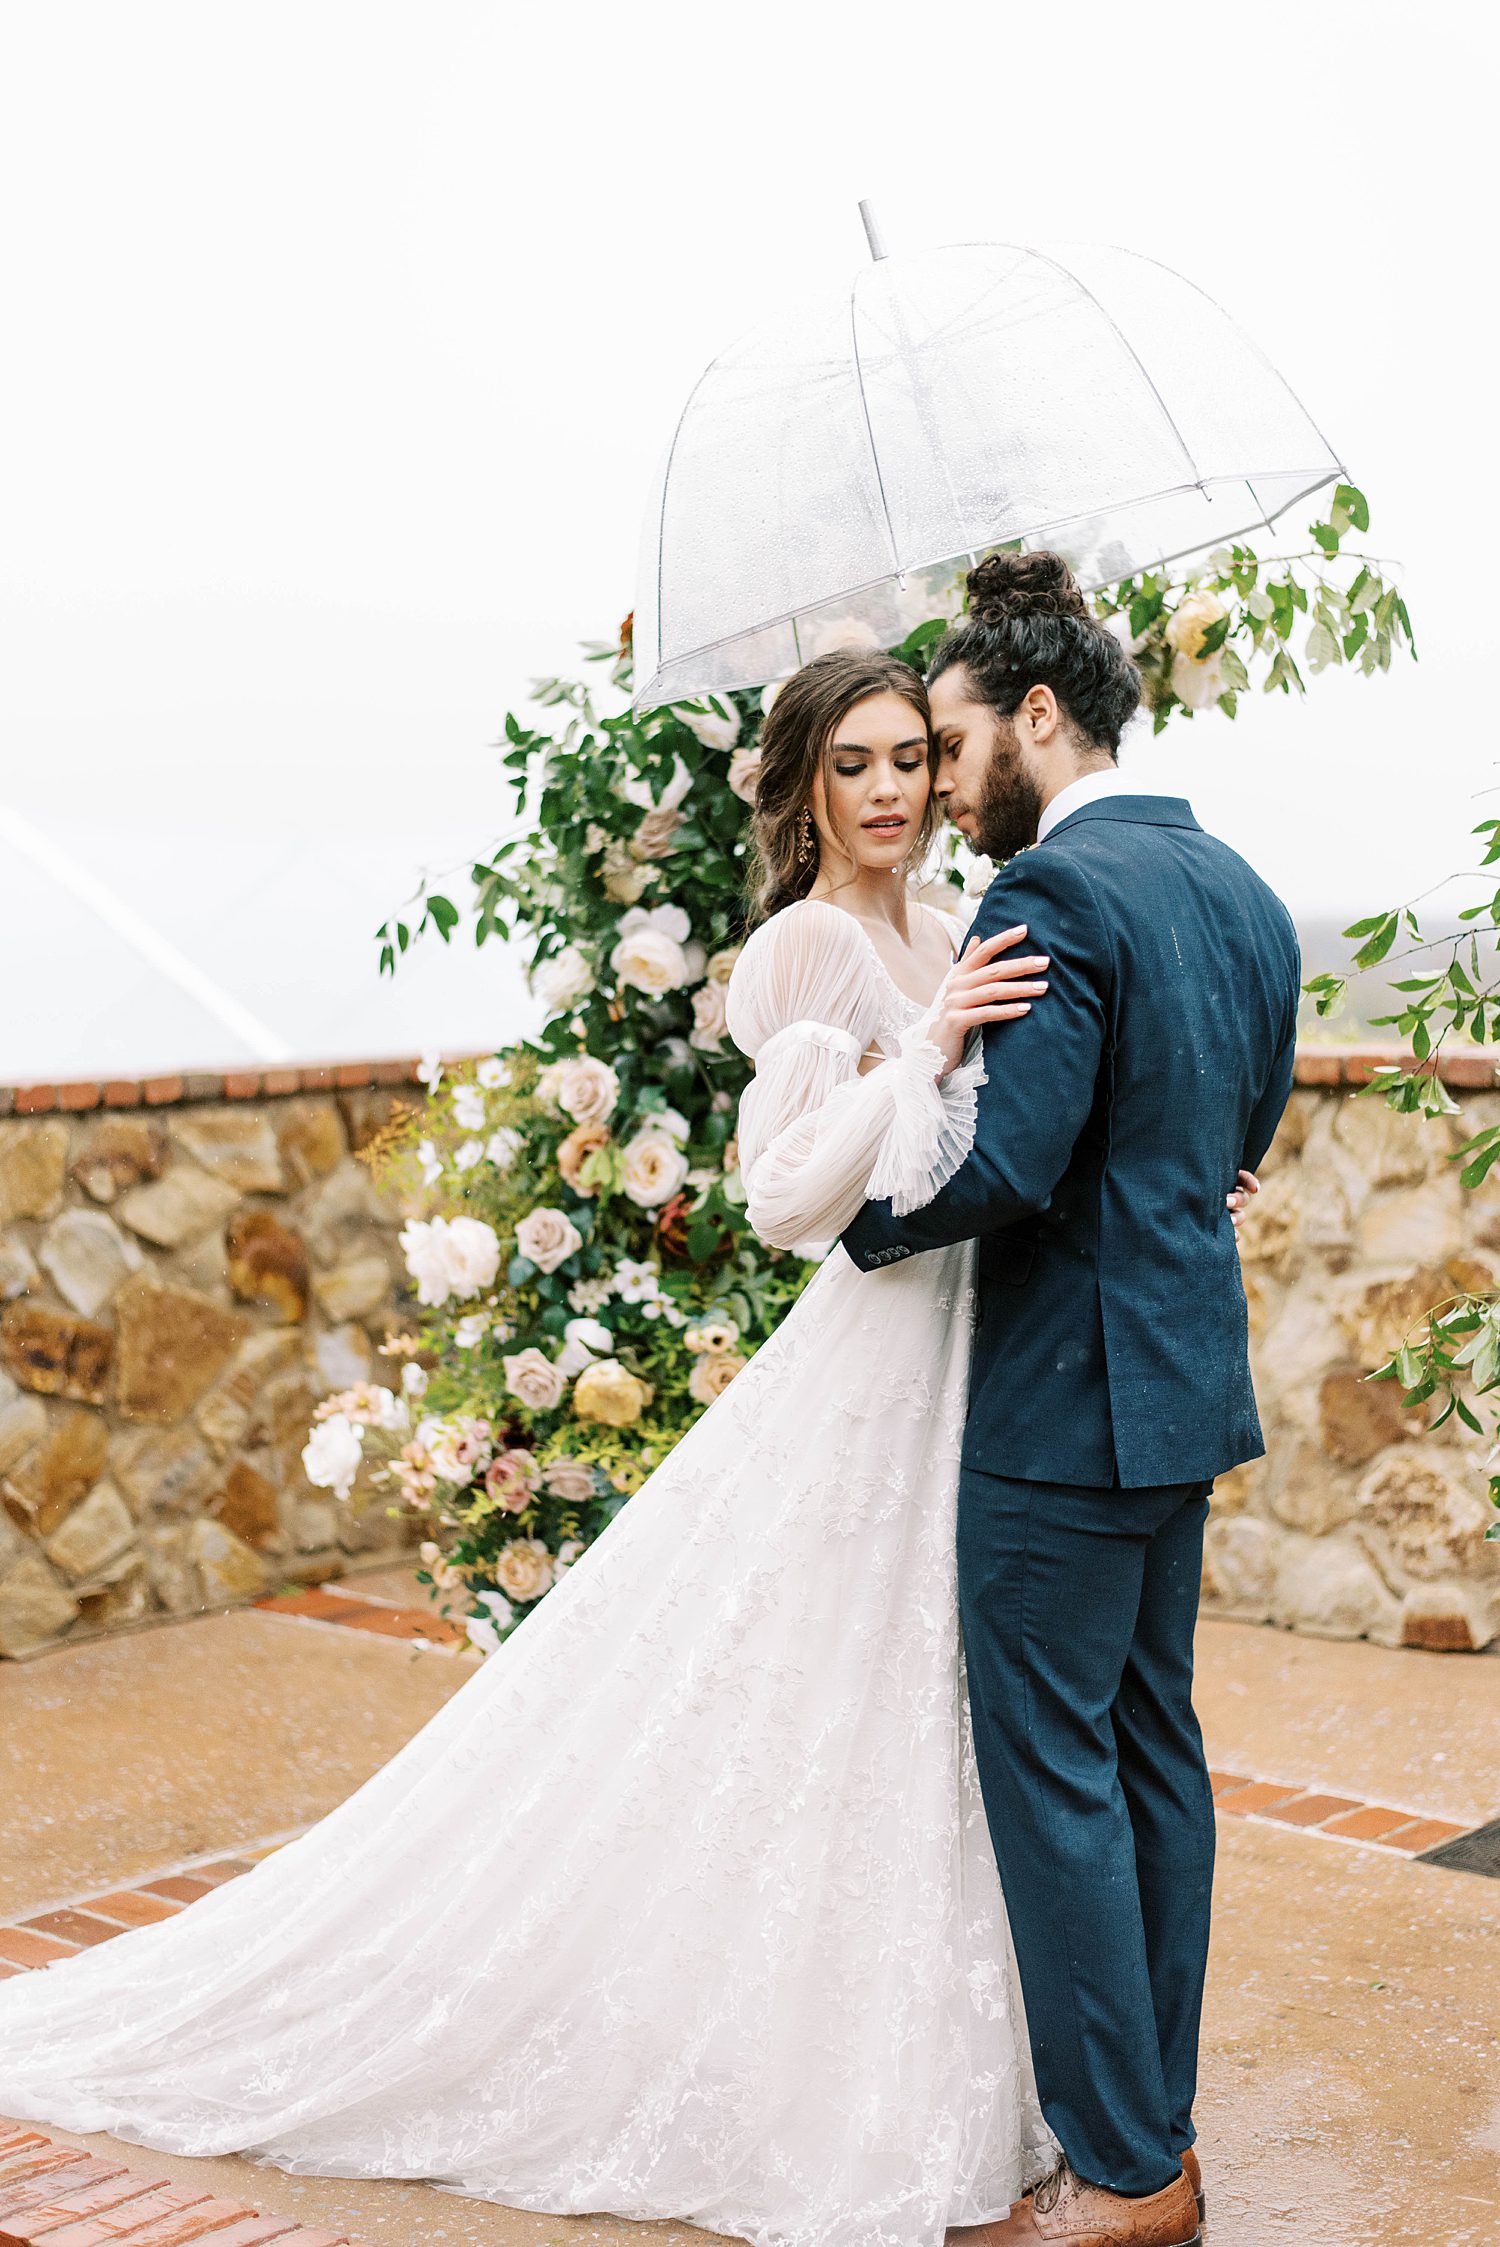 couple hugs under umbrella during rainy wedding day